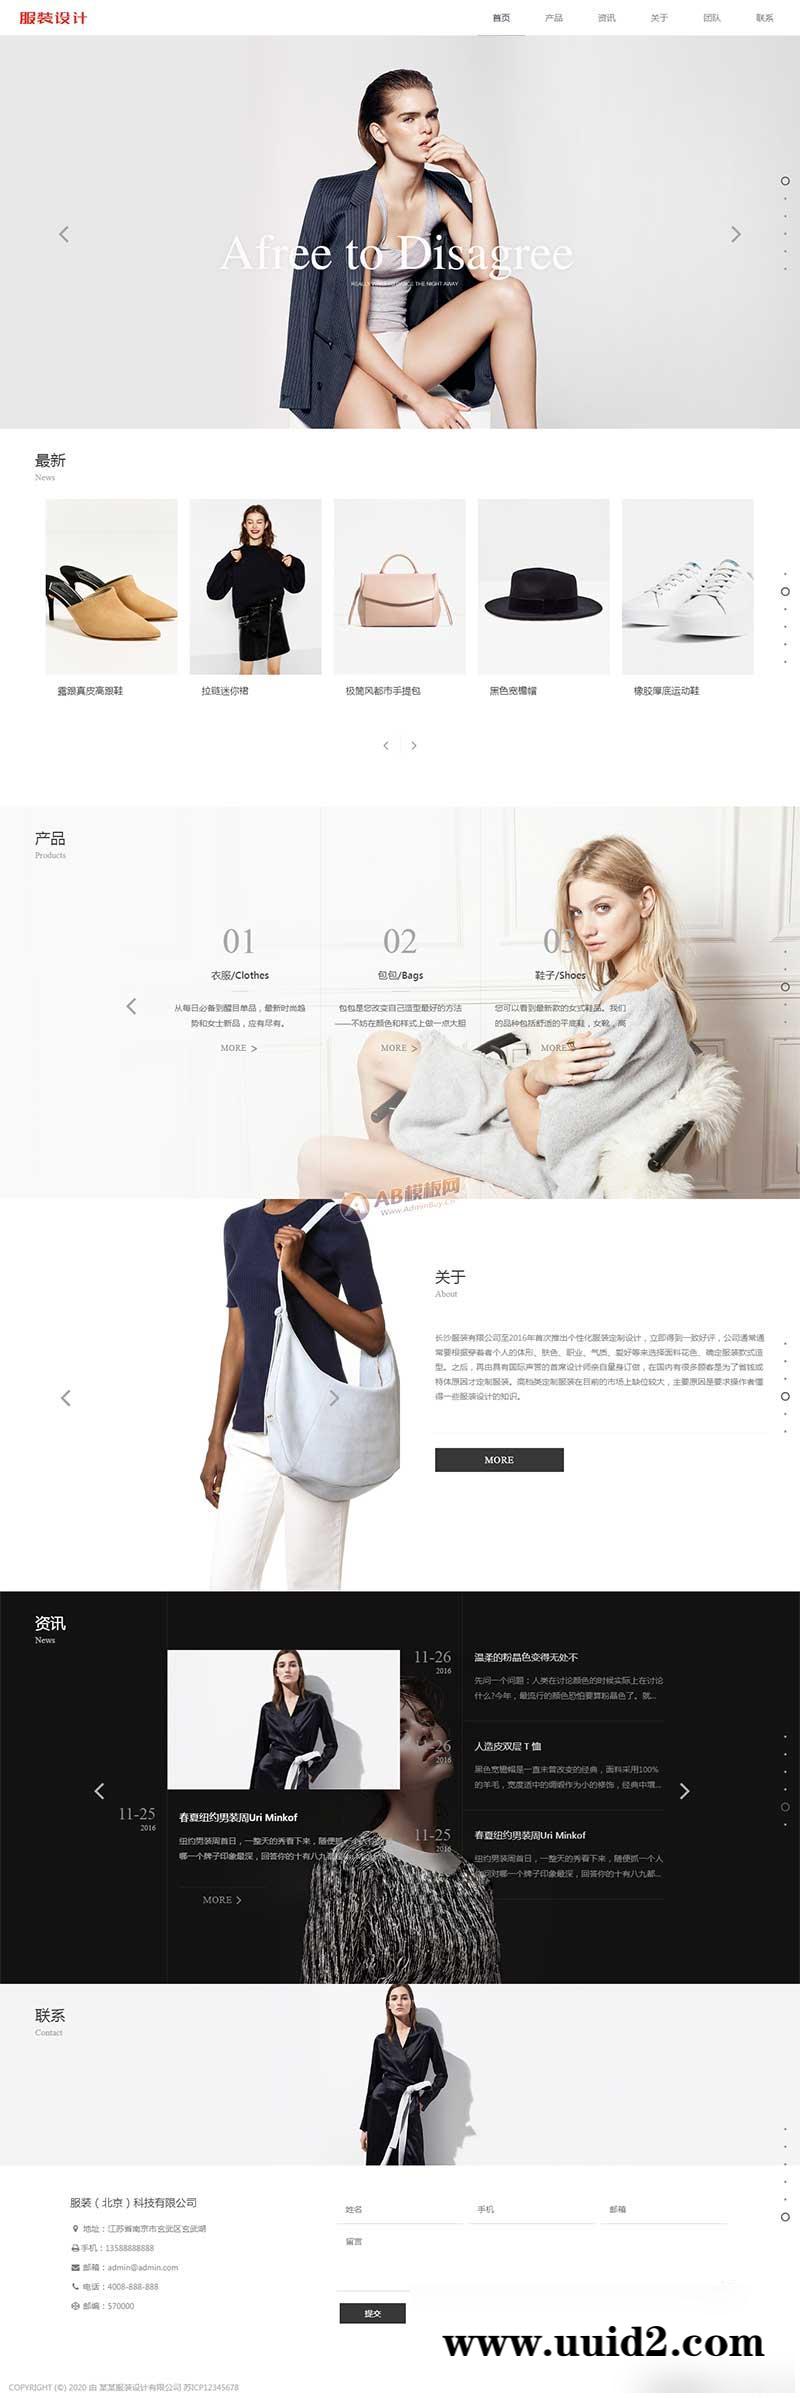 响应式创意滚屏摄影服装服饰网站源码 HTML5品牌女装网站模板(自适应移动端)